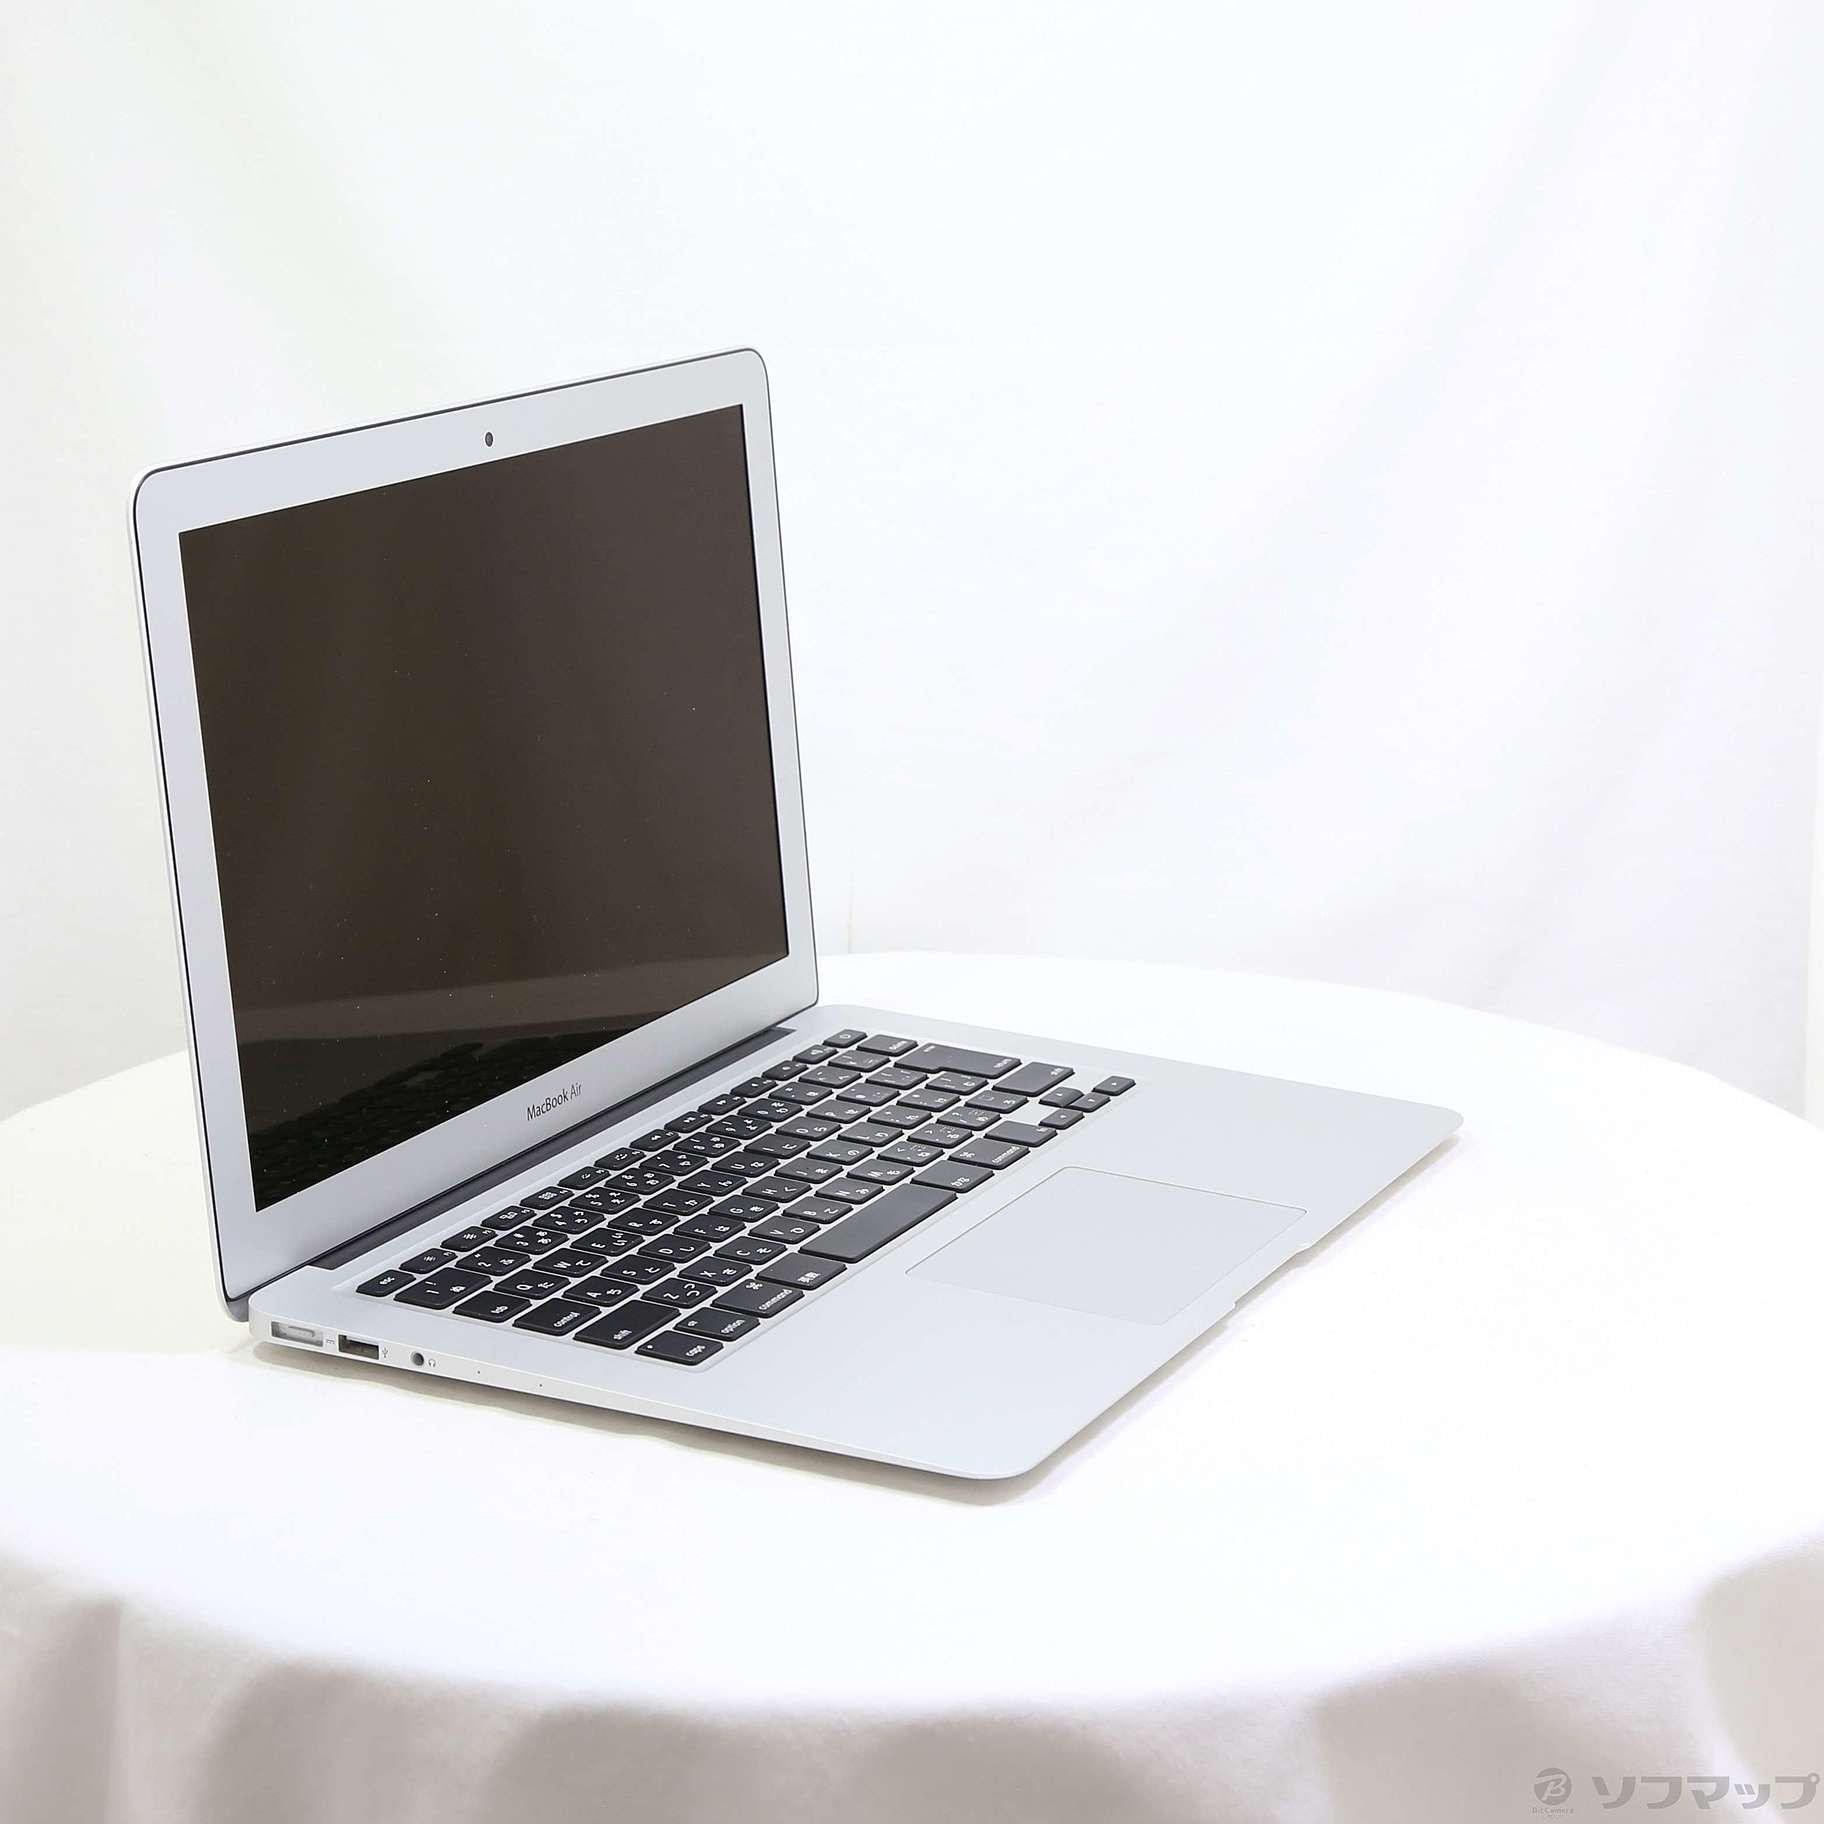 MacBook Air 1.4GHz MD760J/B